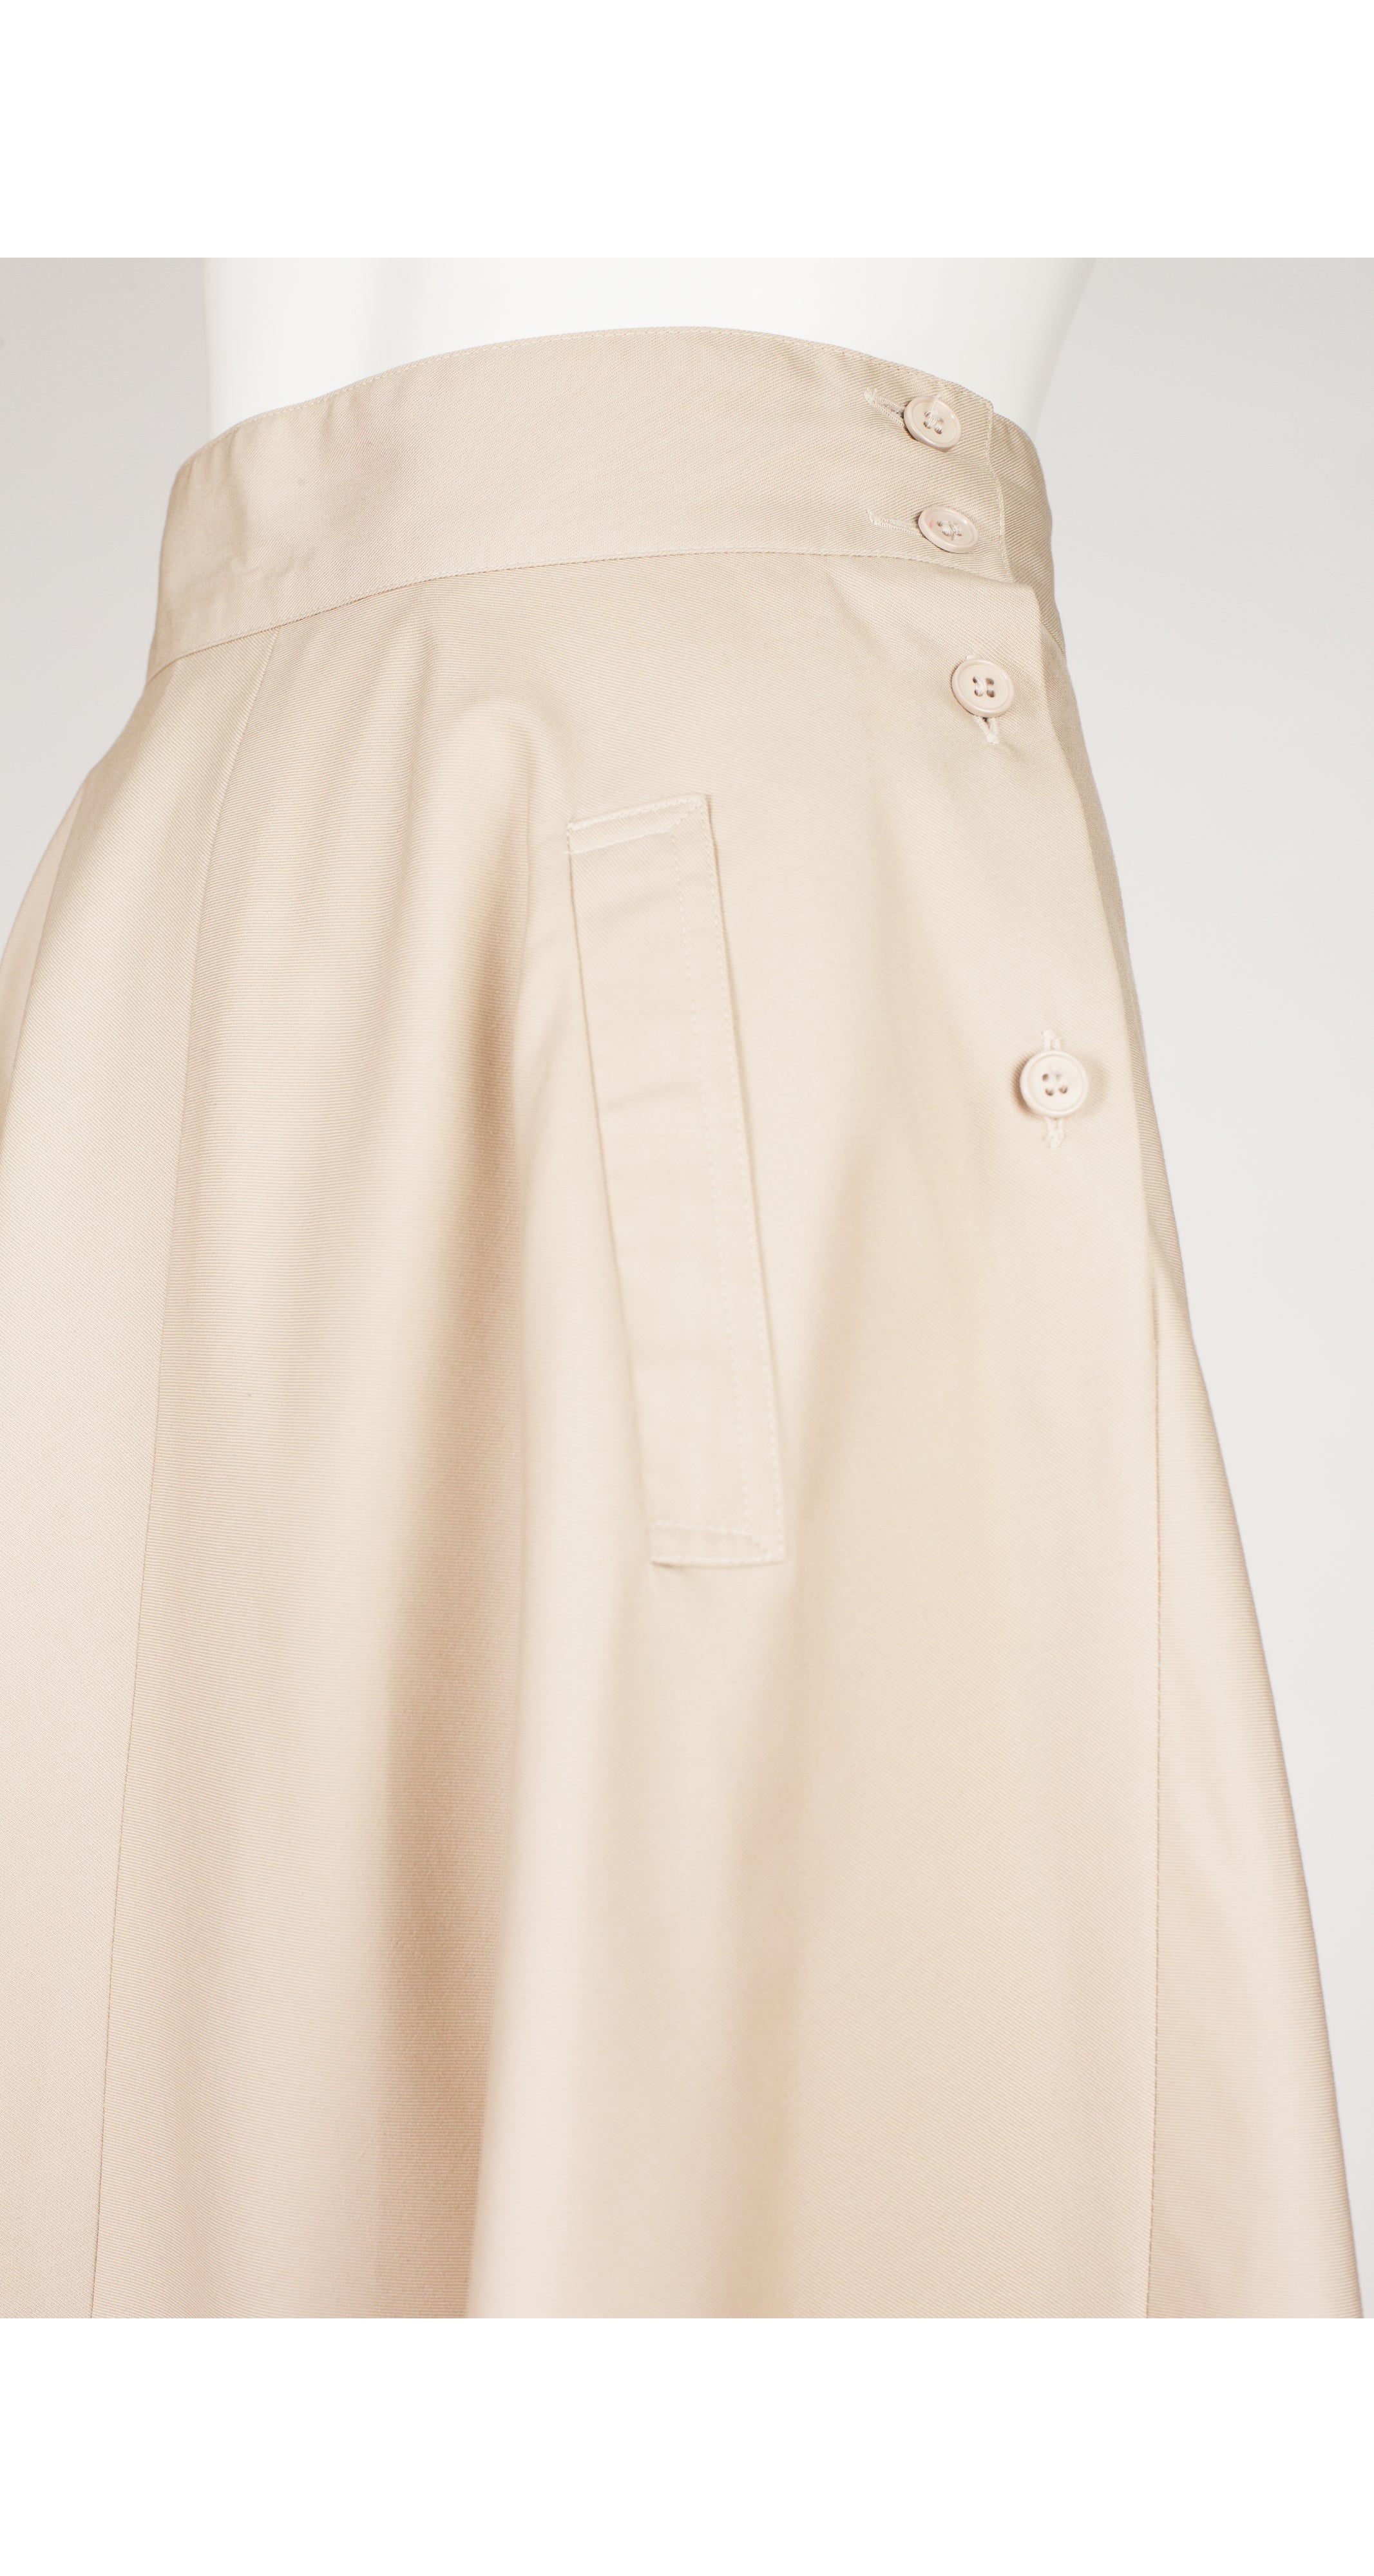 1970s Beige Cotton Flared Knee-Length Skirt